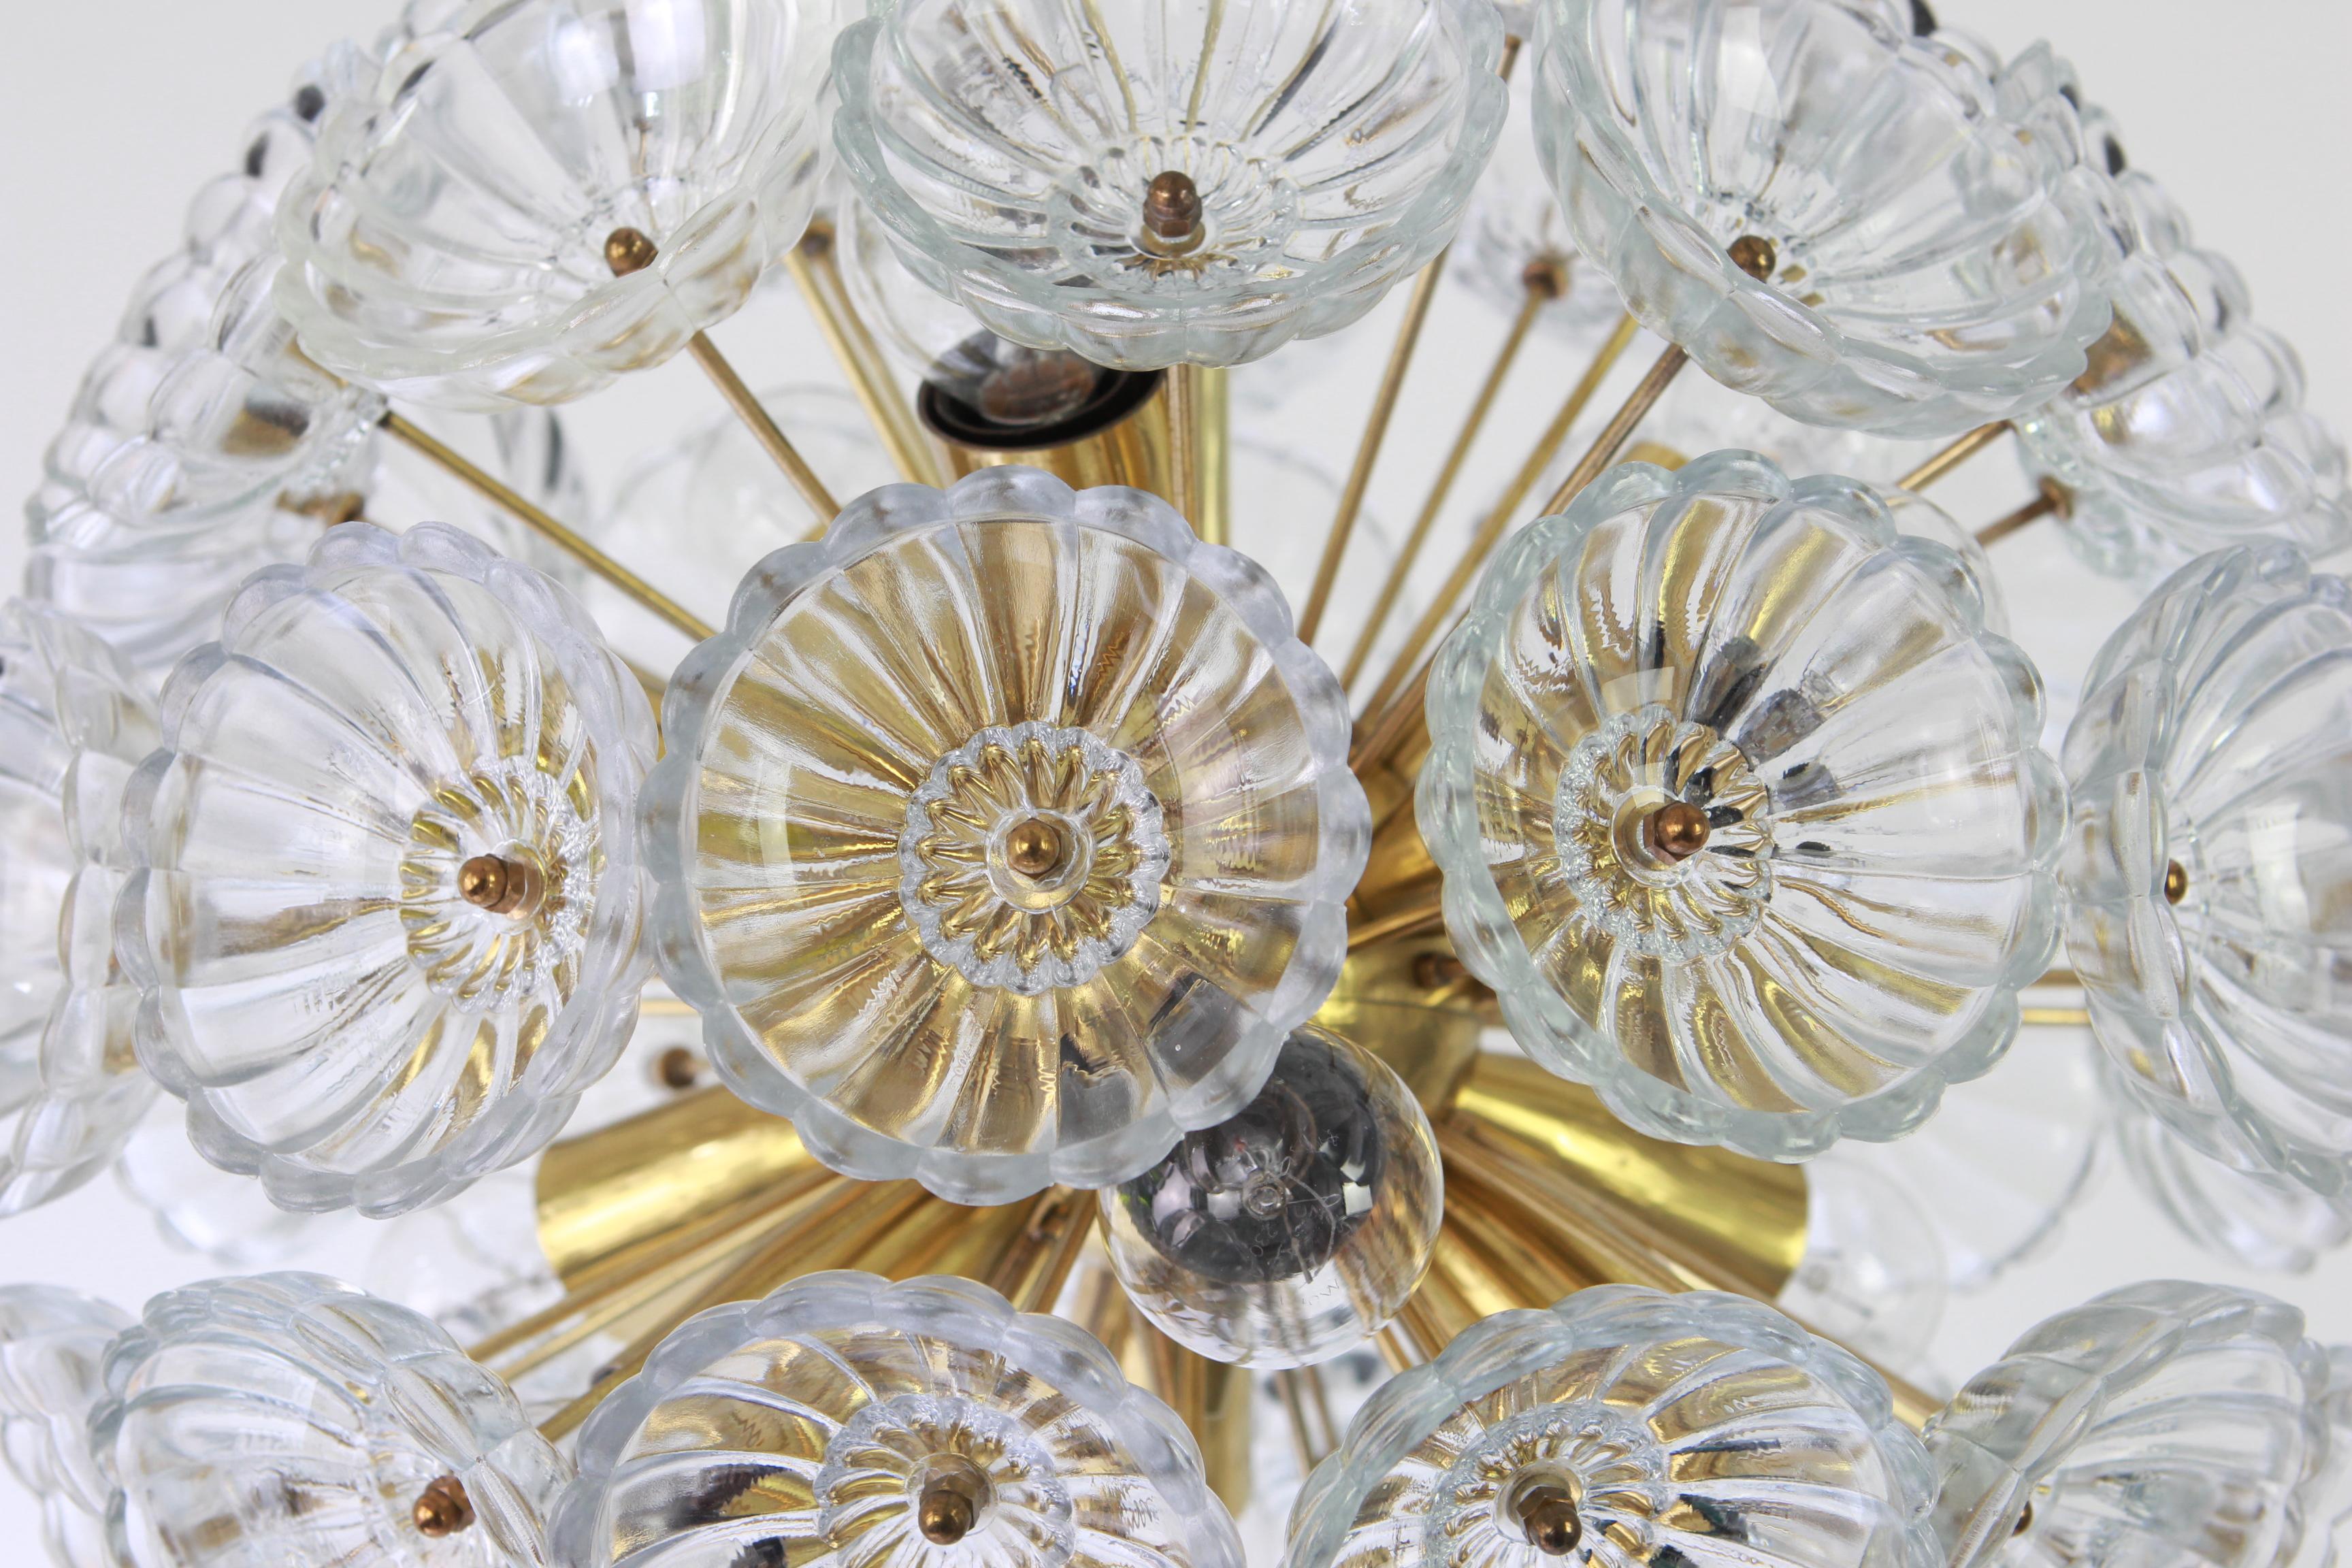 Impresionantes lámparas Sputnik de cristal floral y latón, Alemania, años 60.

Requiere 12 bombillas estándar E14 de 40 W máx. cada una y compatibles con EE.UU./Reino Unido/ etc. Normas. Muy buen estado.
La varilla de caída puede ajustarse según